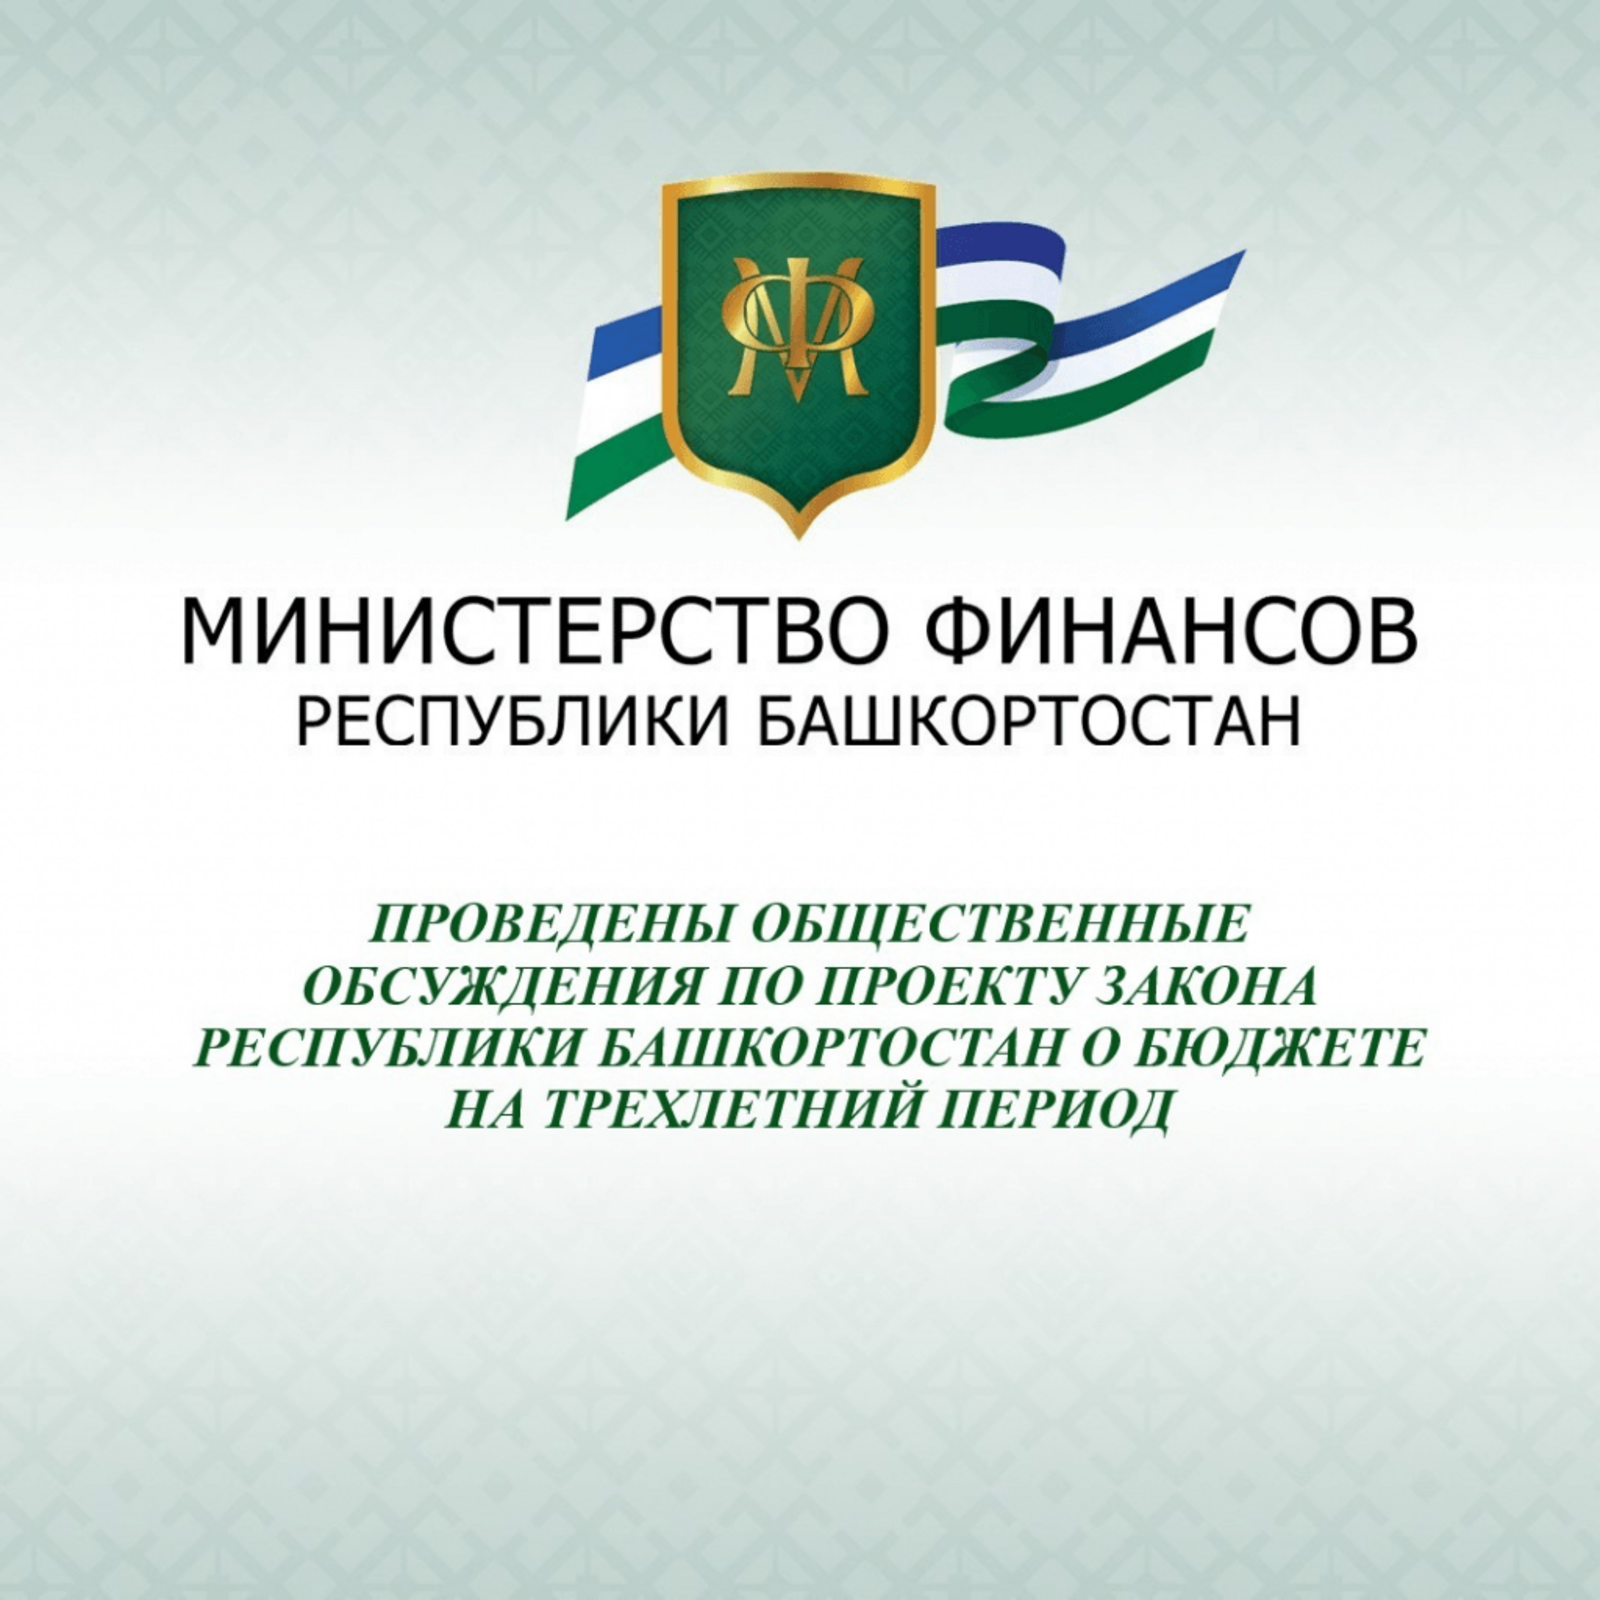 Проведены общественные обсуждения по проекту закона Республики Башкортостан о бюджете на трехлетний период.